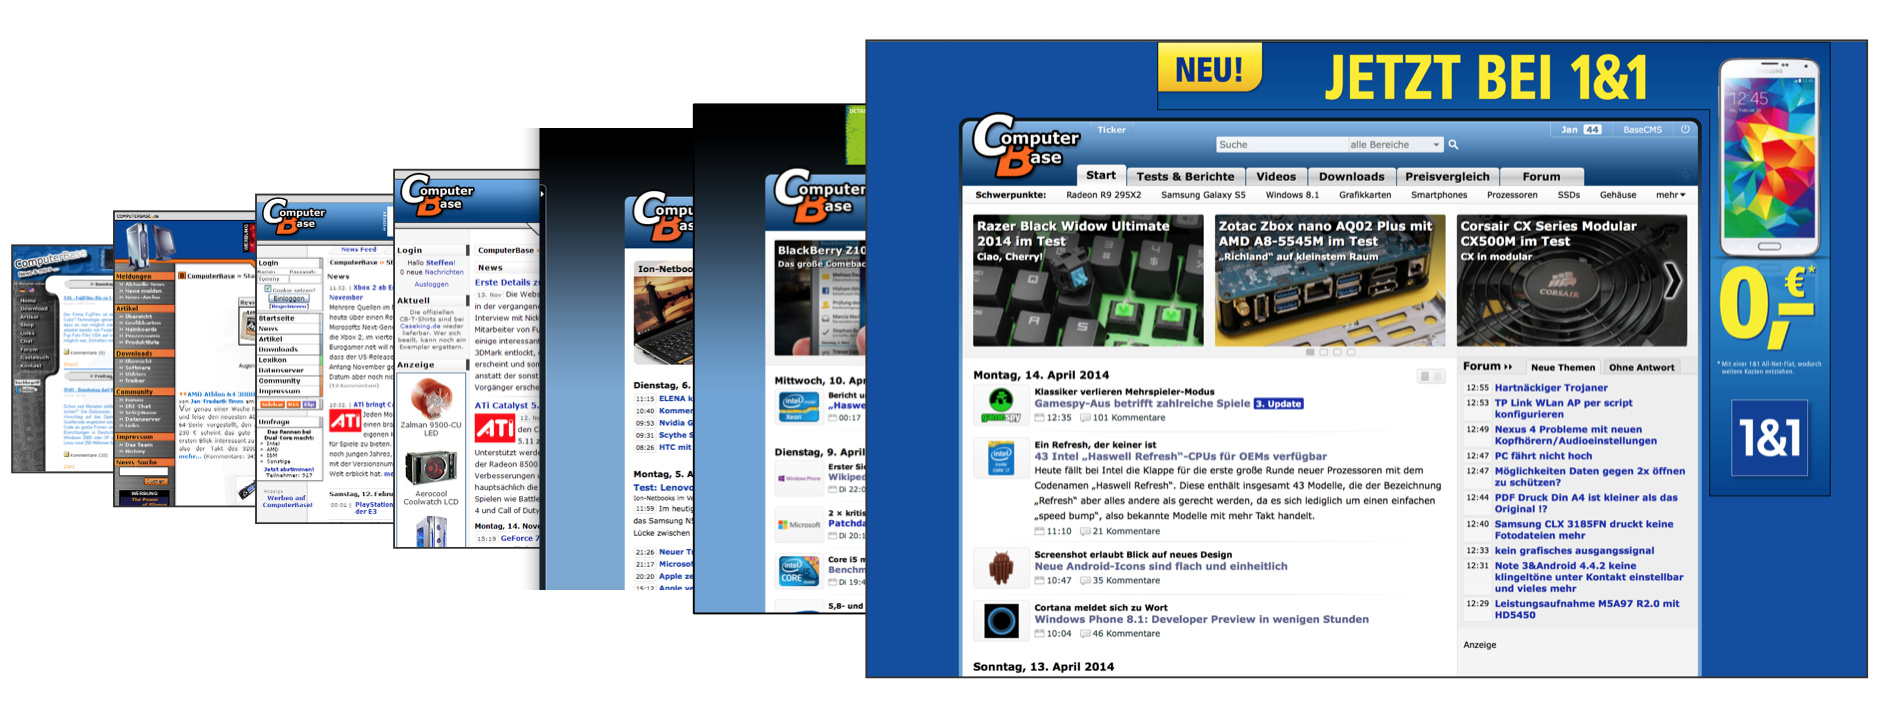 ComputerBase: 1999 bis 2014